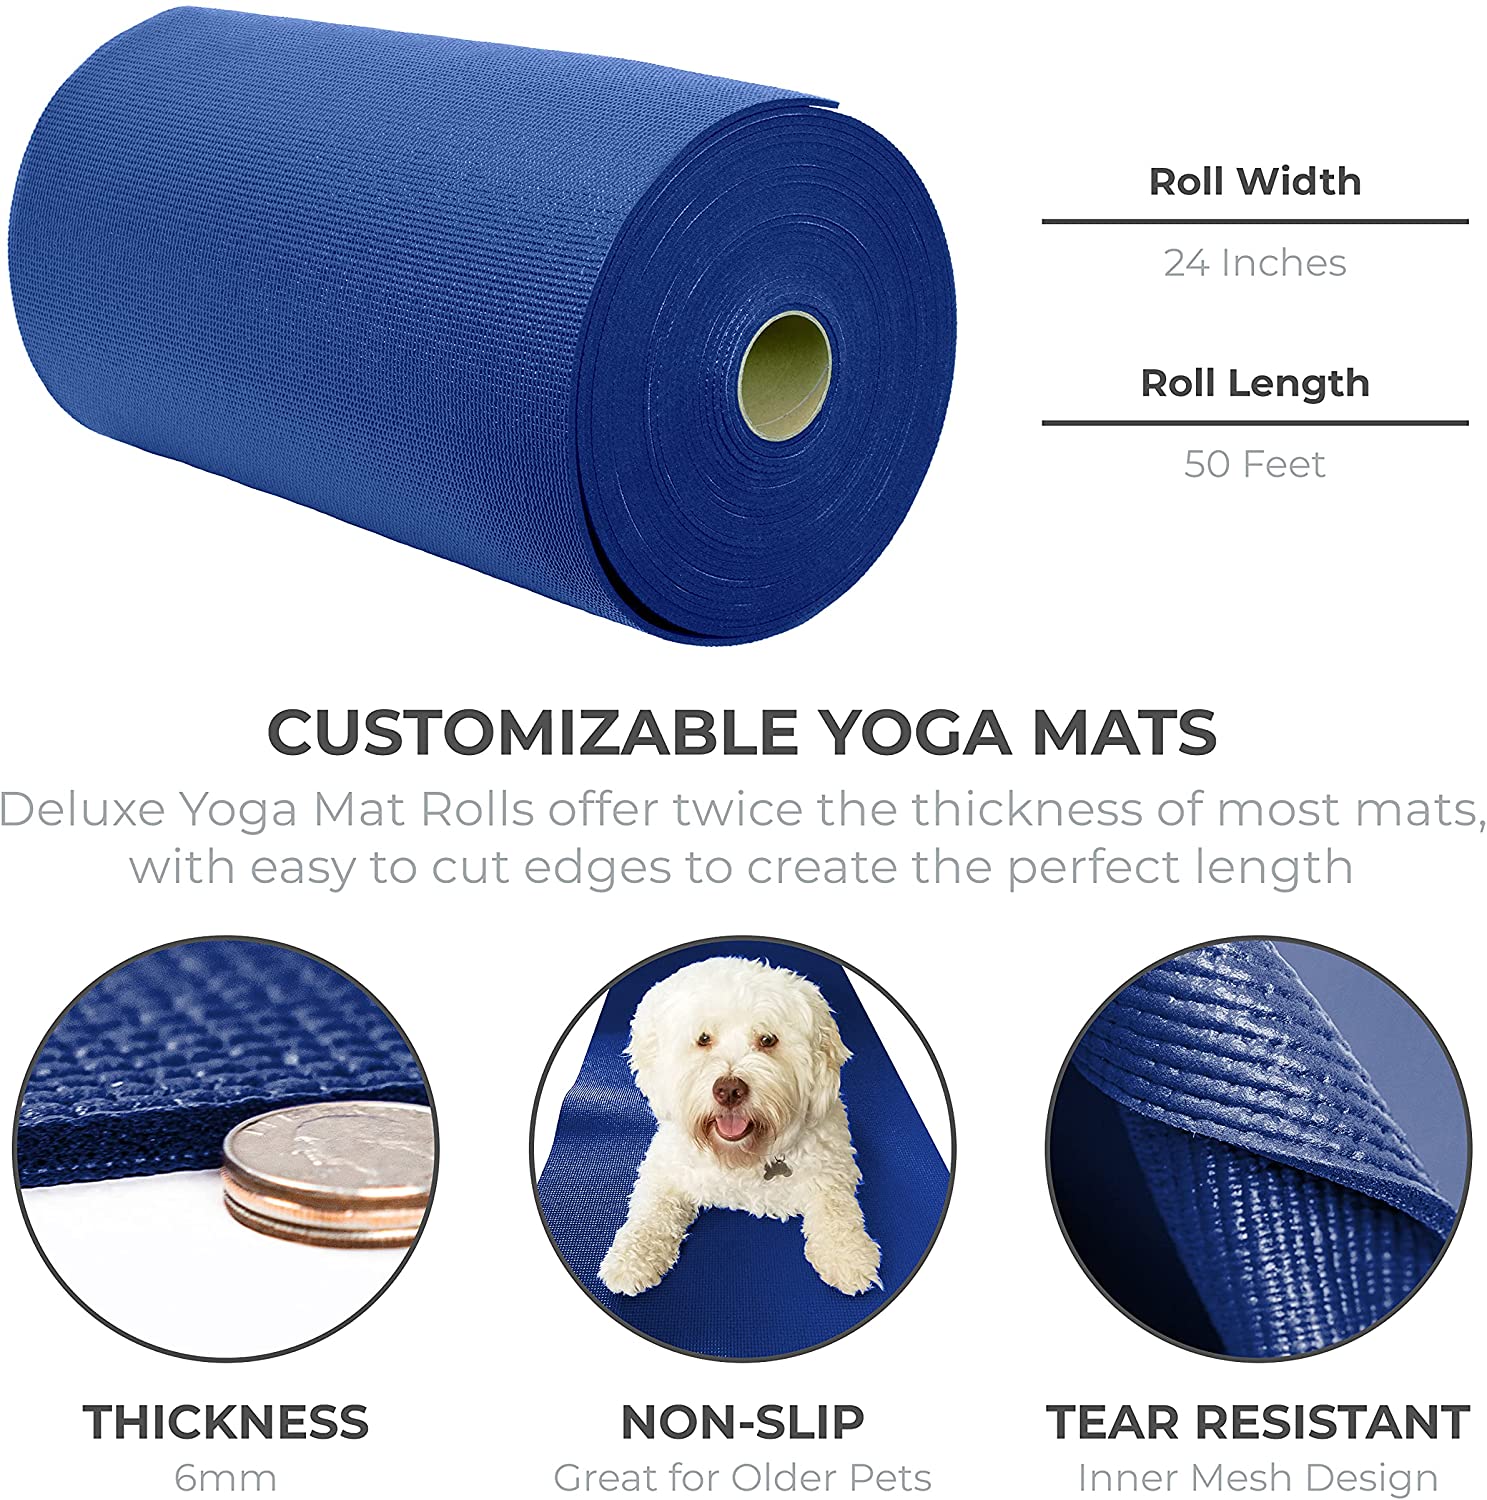 Commercio all'ingrosso di materie prime per tappetini da yoga